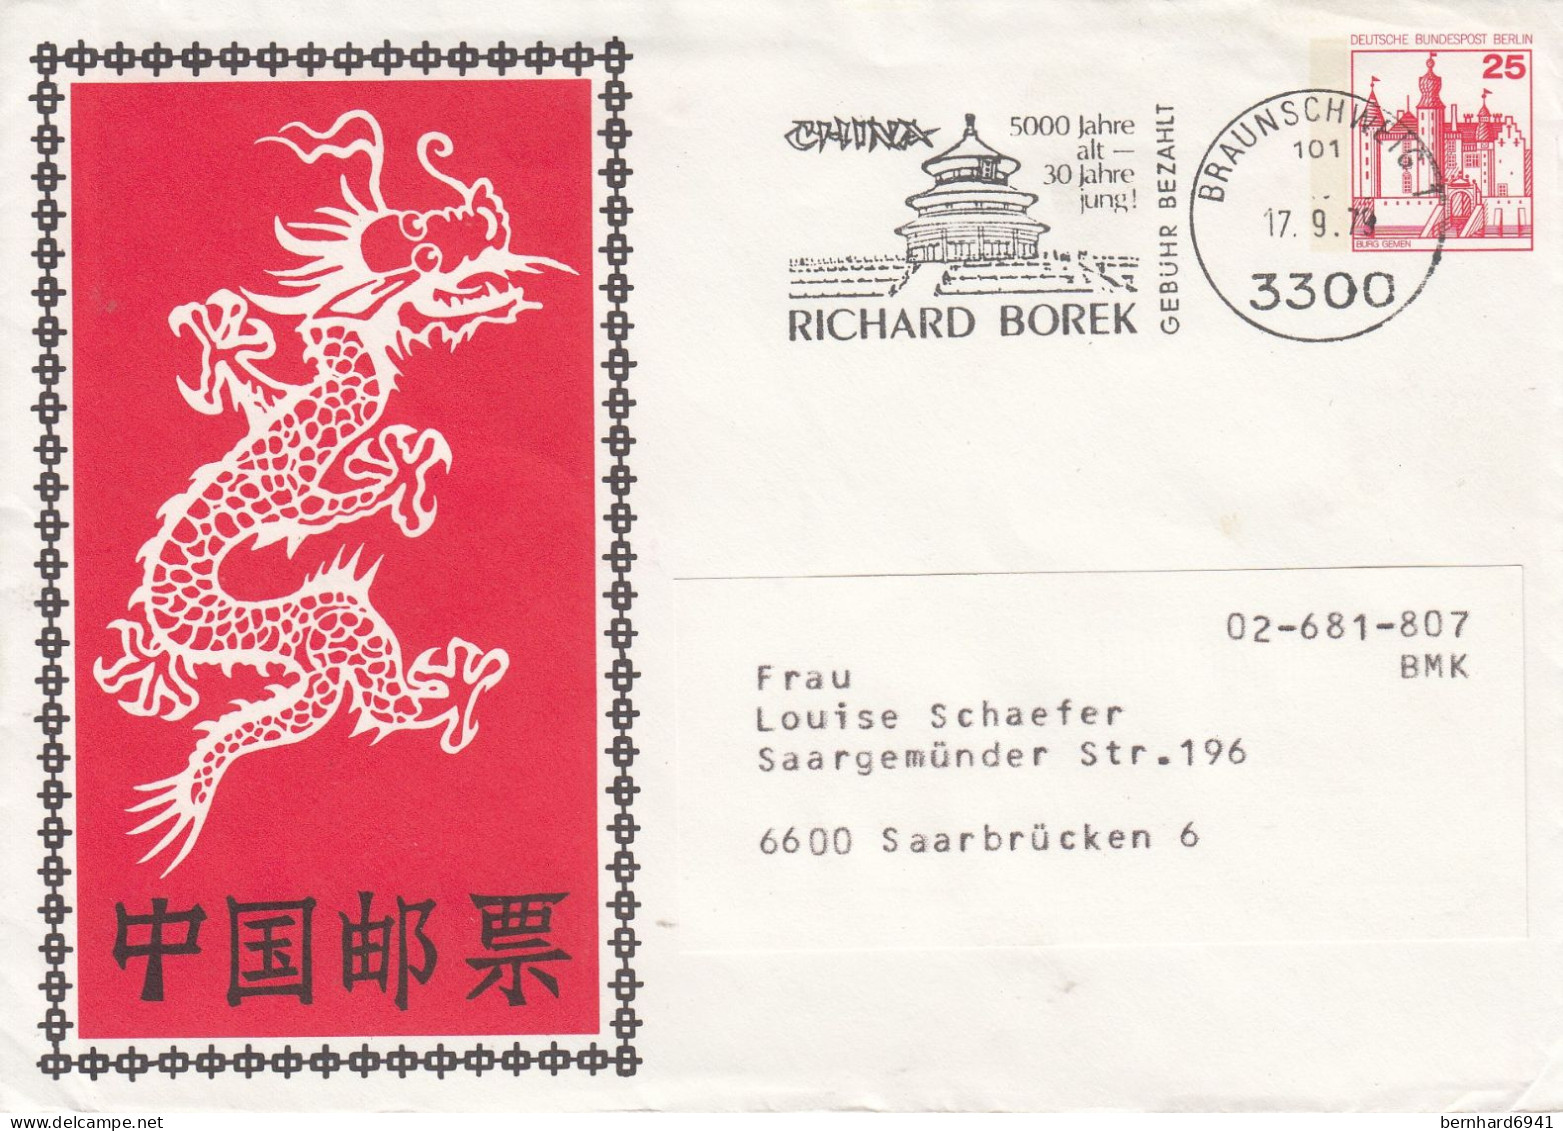 B PU 67/1 Chinischer Drache Und Schriftzeichen - Rückseite Mit 3300 Braunschweig, Braunschweig 1 - Sobres Privados - Usados